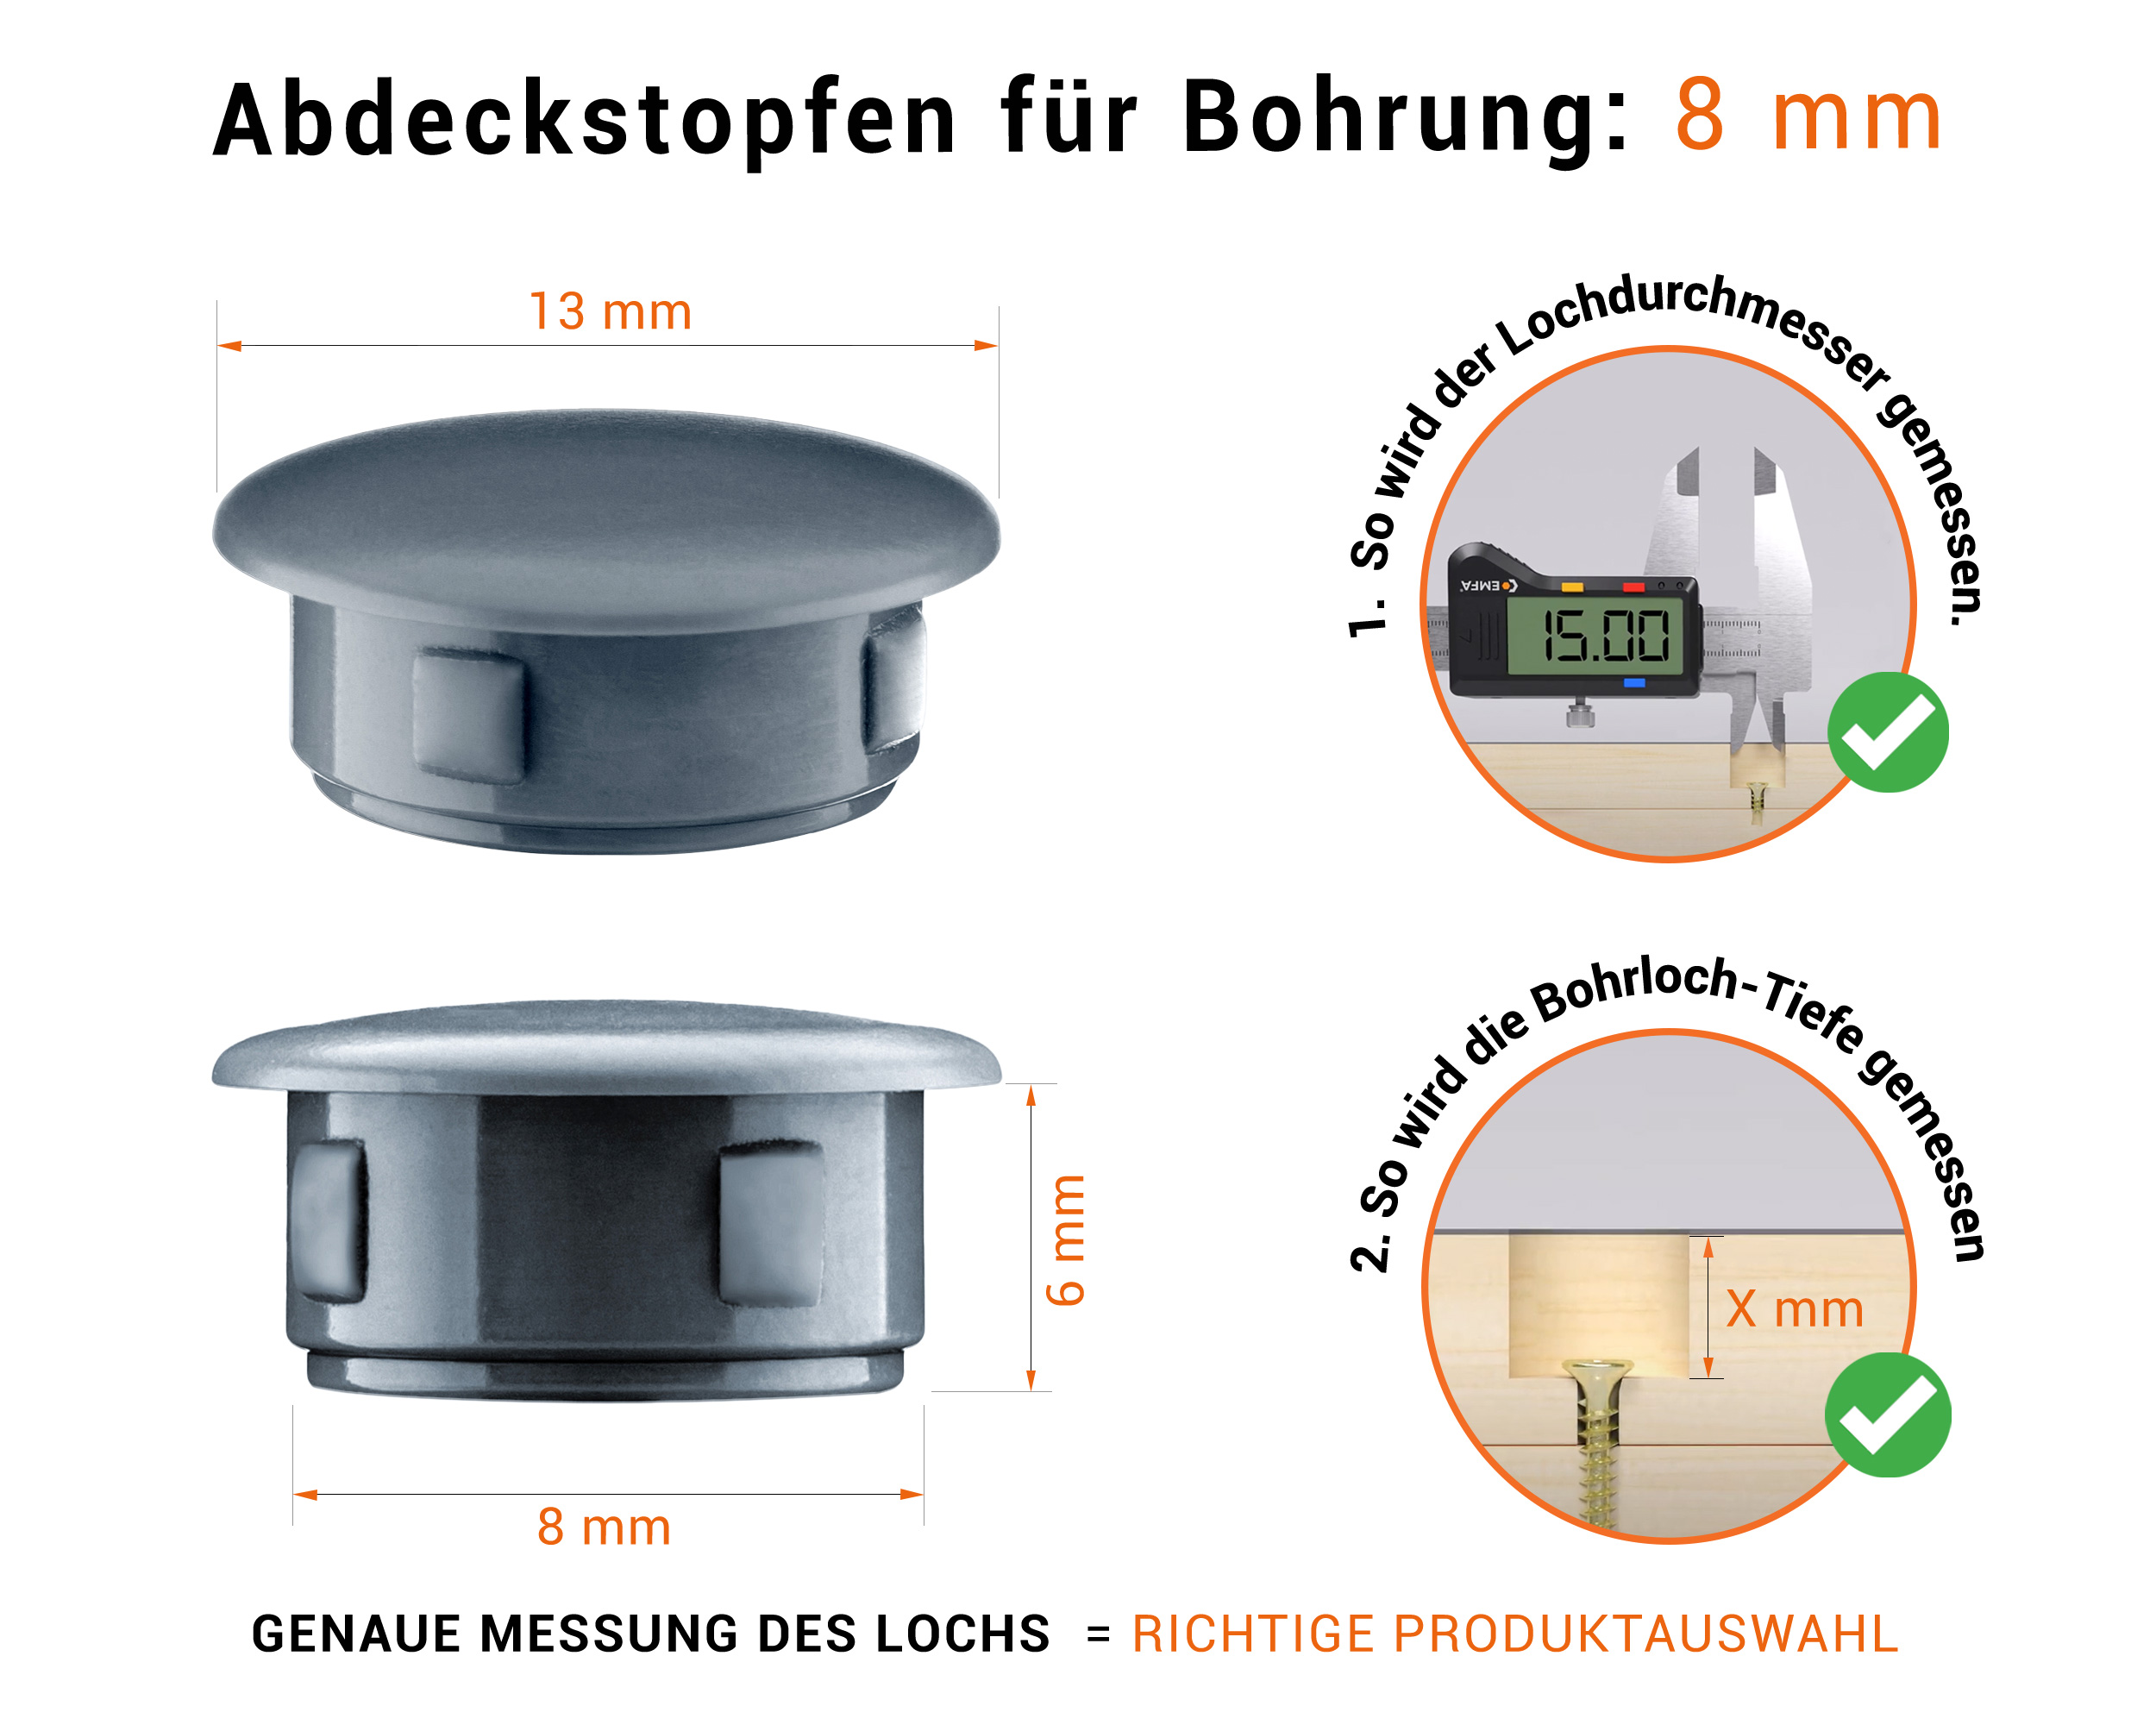 Anthrazite Blindstopfen aus Kunststoff für Bohrung 8 mm mm mit technischen Abmessungen und Anleitung für korrekte Messung